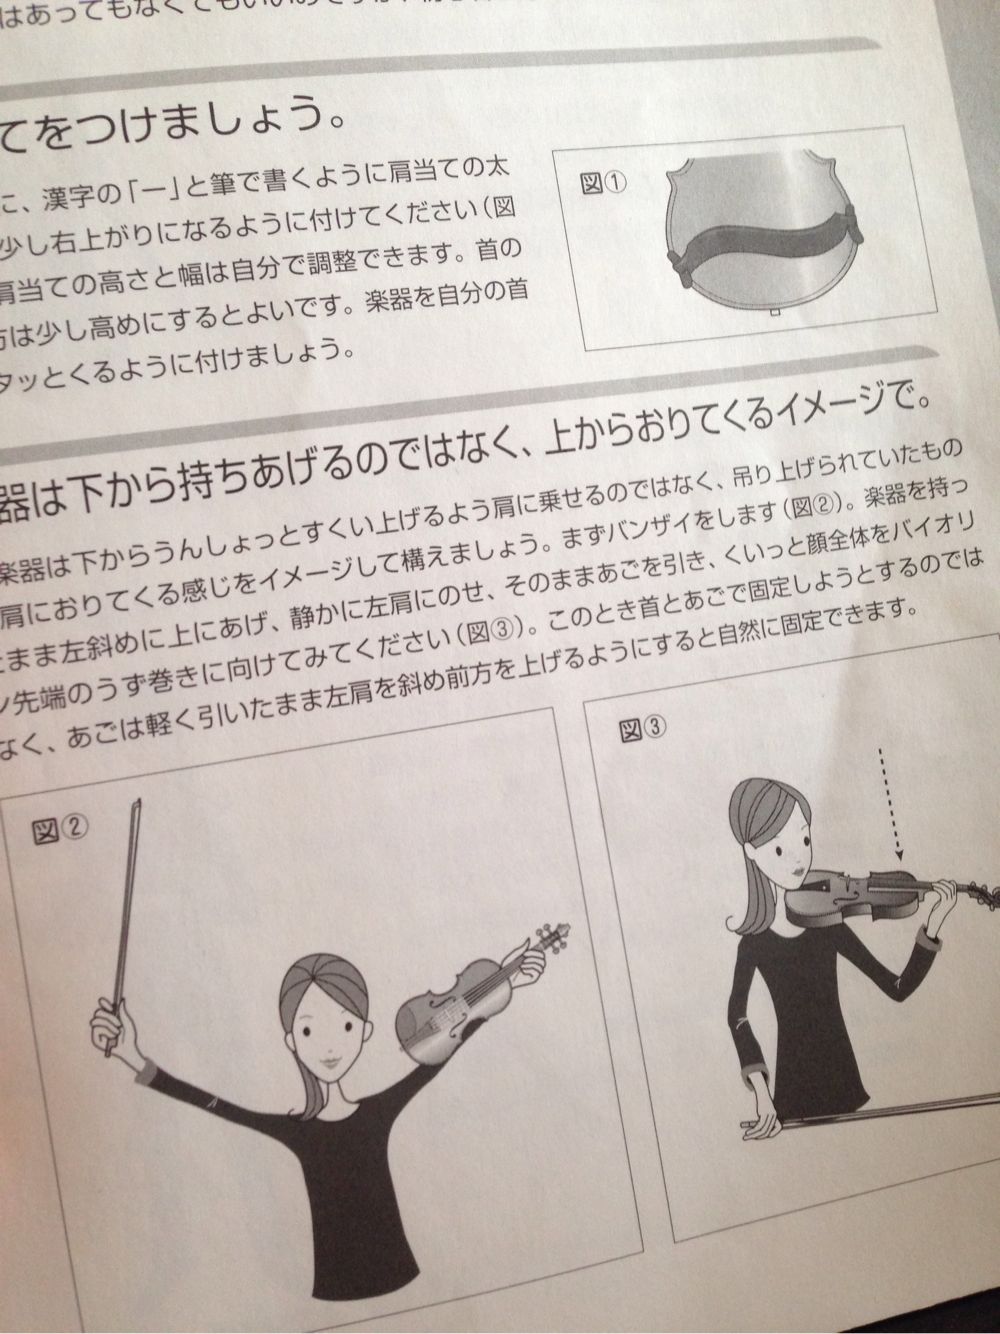 『奏法と基礎知識が分かる 基本の基本シリーズ バイオリン』7ページ